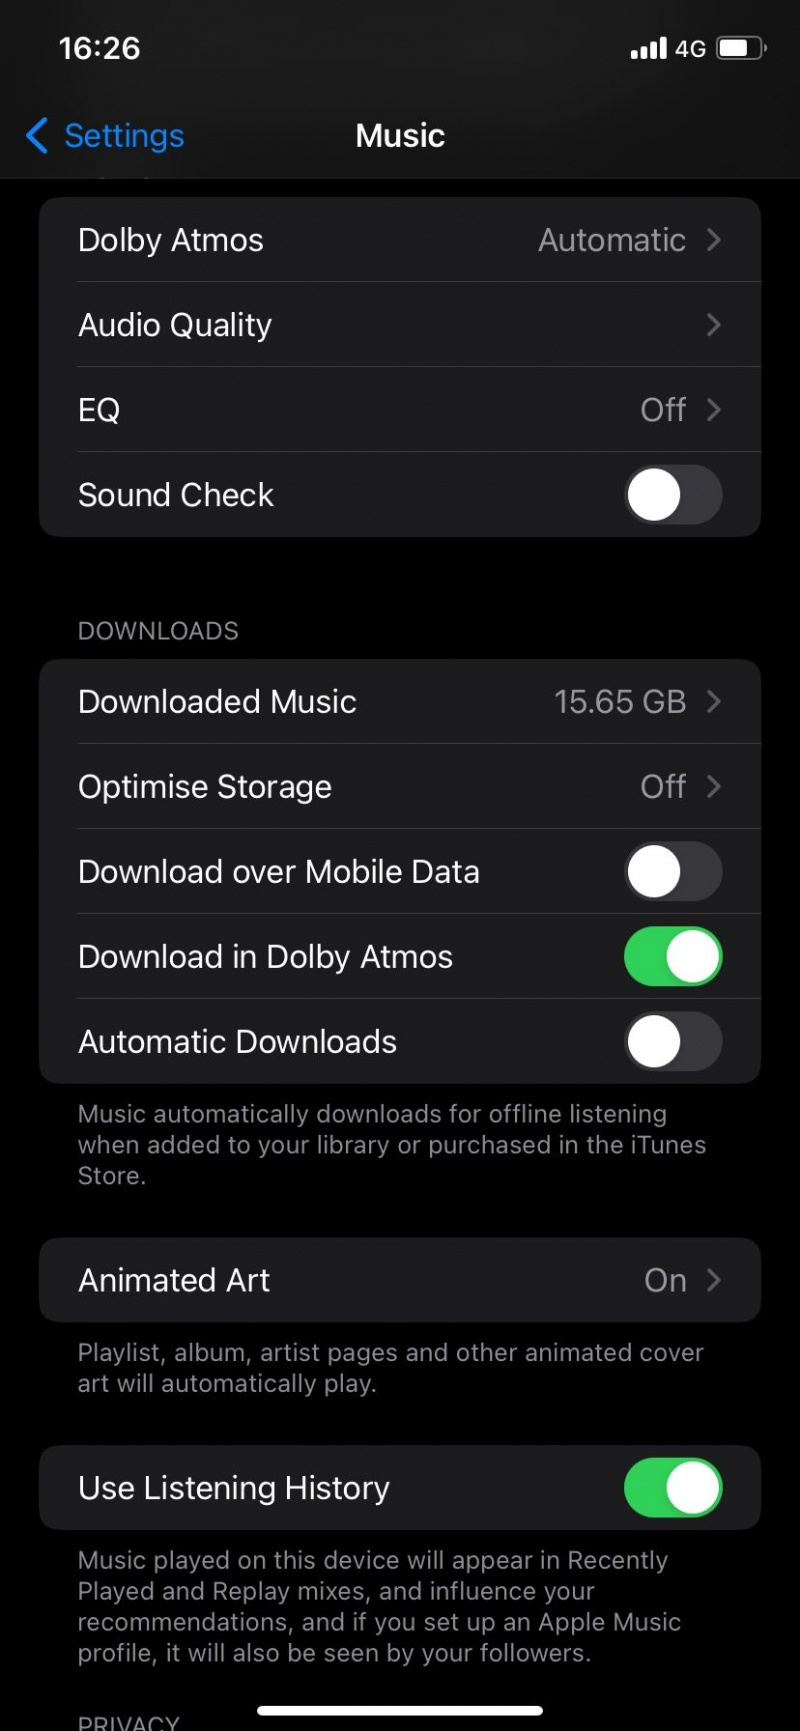   Загрузка через мобильные данные отключена в Apple Music